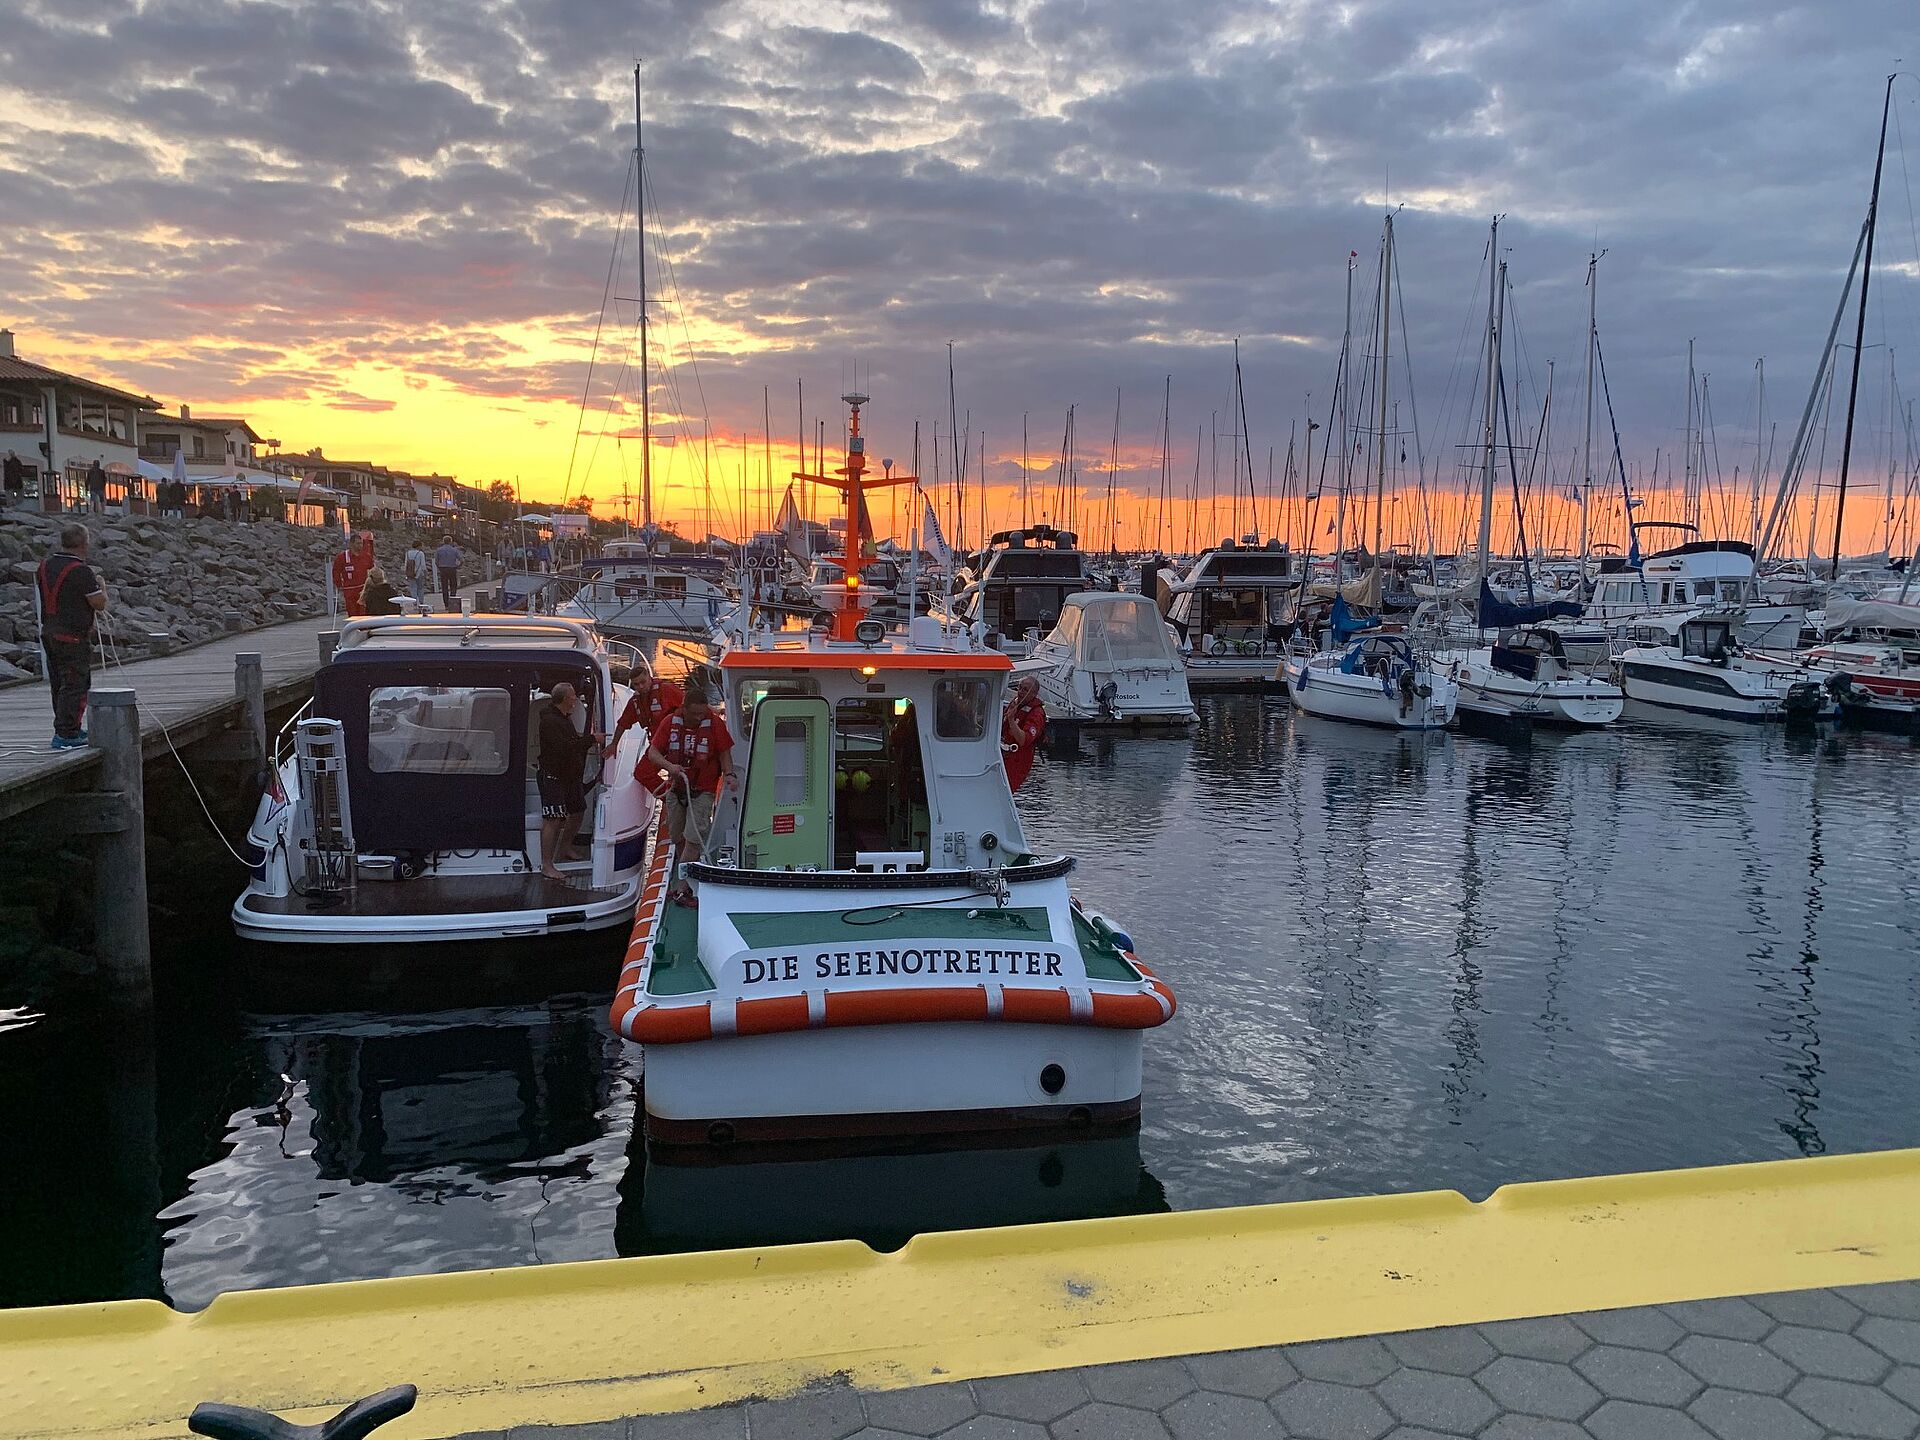 Im Sonnenuntergang liegt das Seenotrettungsboot neben einem kleinen Motorboot im Hafen von Kühlungsborn. Seenotretter helfen beim Festmachen und übernehmen Leinen.